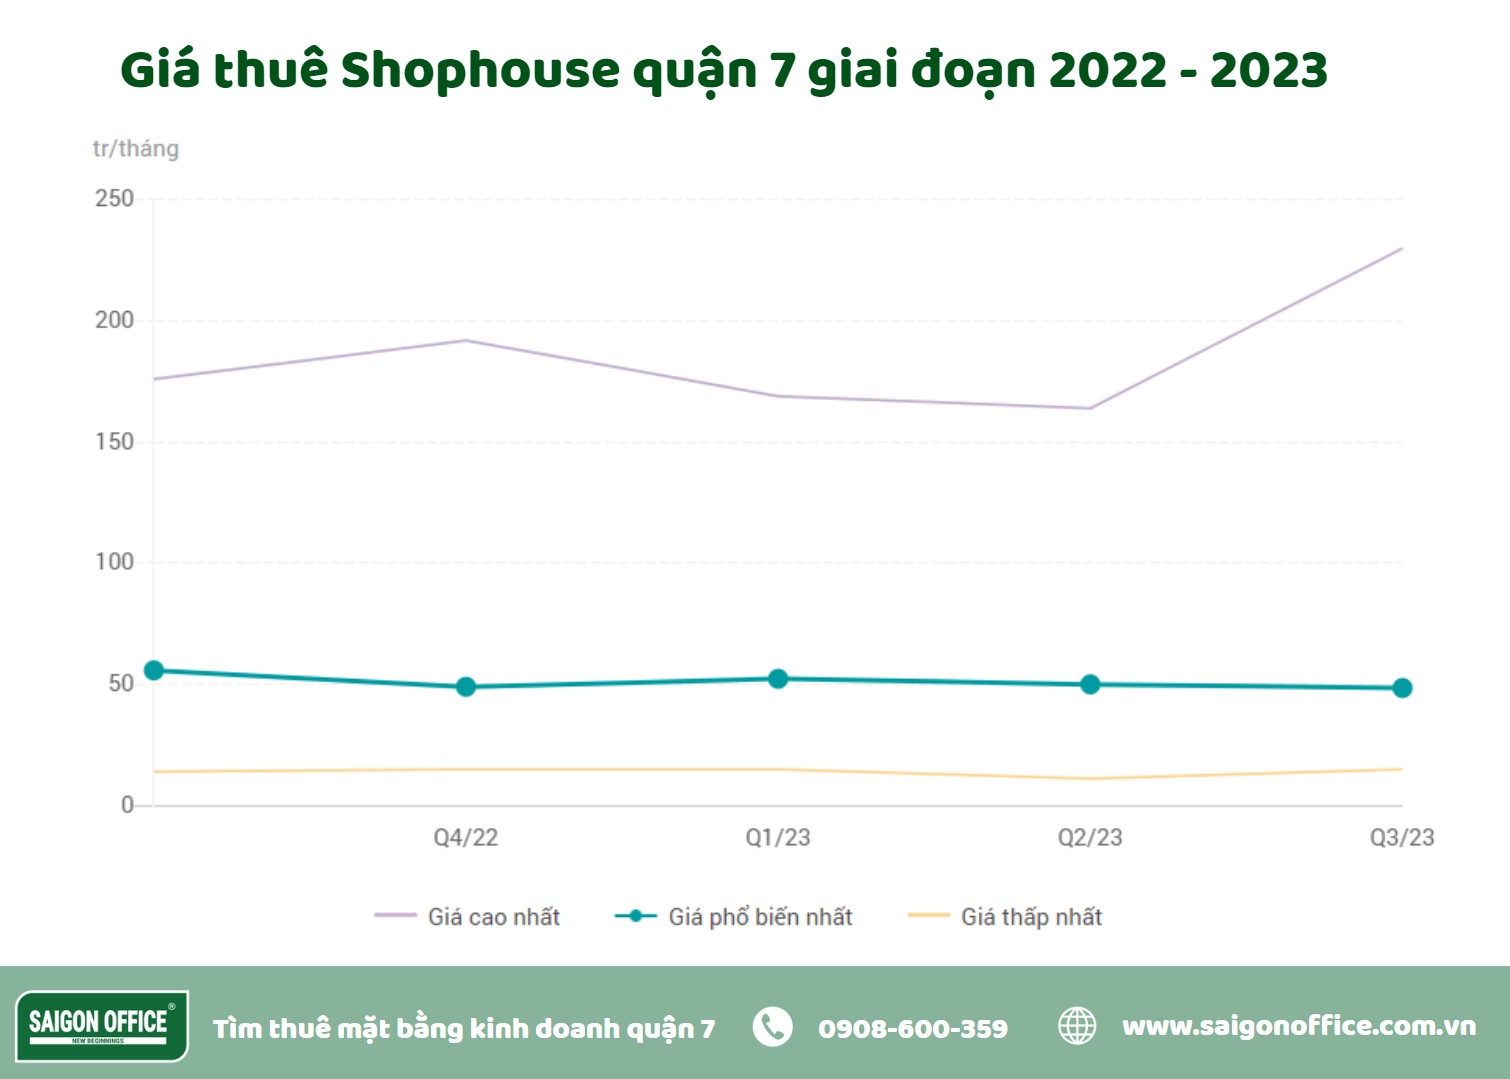 Cập nhật giá thuê shophouse quận 7 2022 - 2023